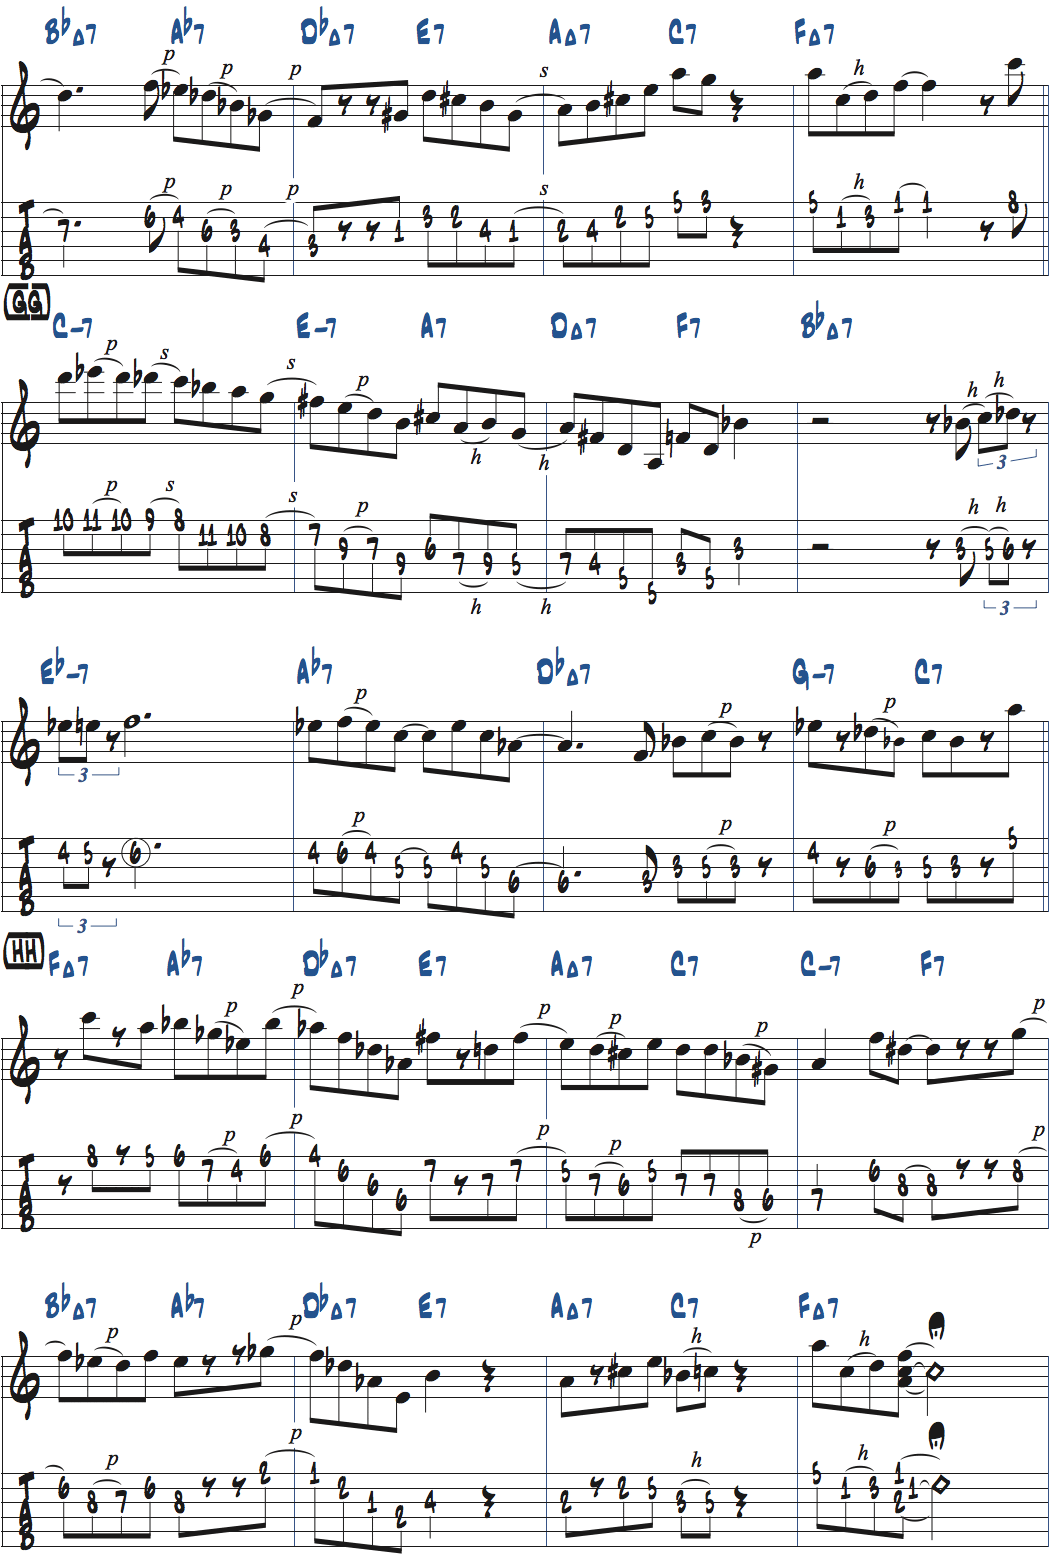 カート・ローゼンウィンケル「26-2」後テーマメロディタブ譜付きギタースコア楽譜ページ2